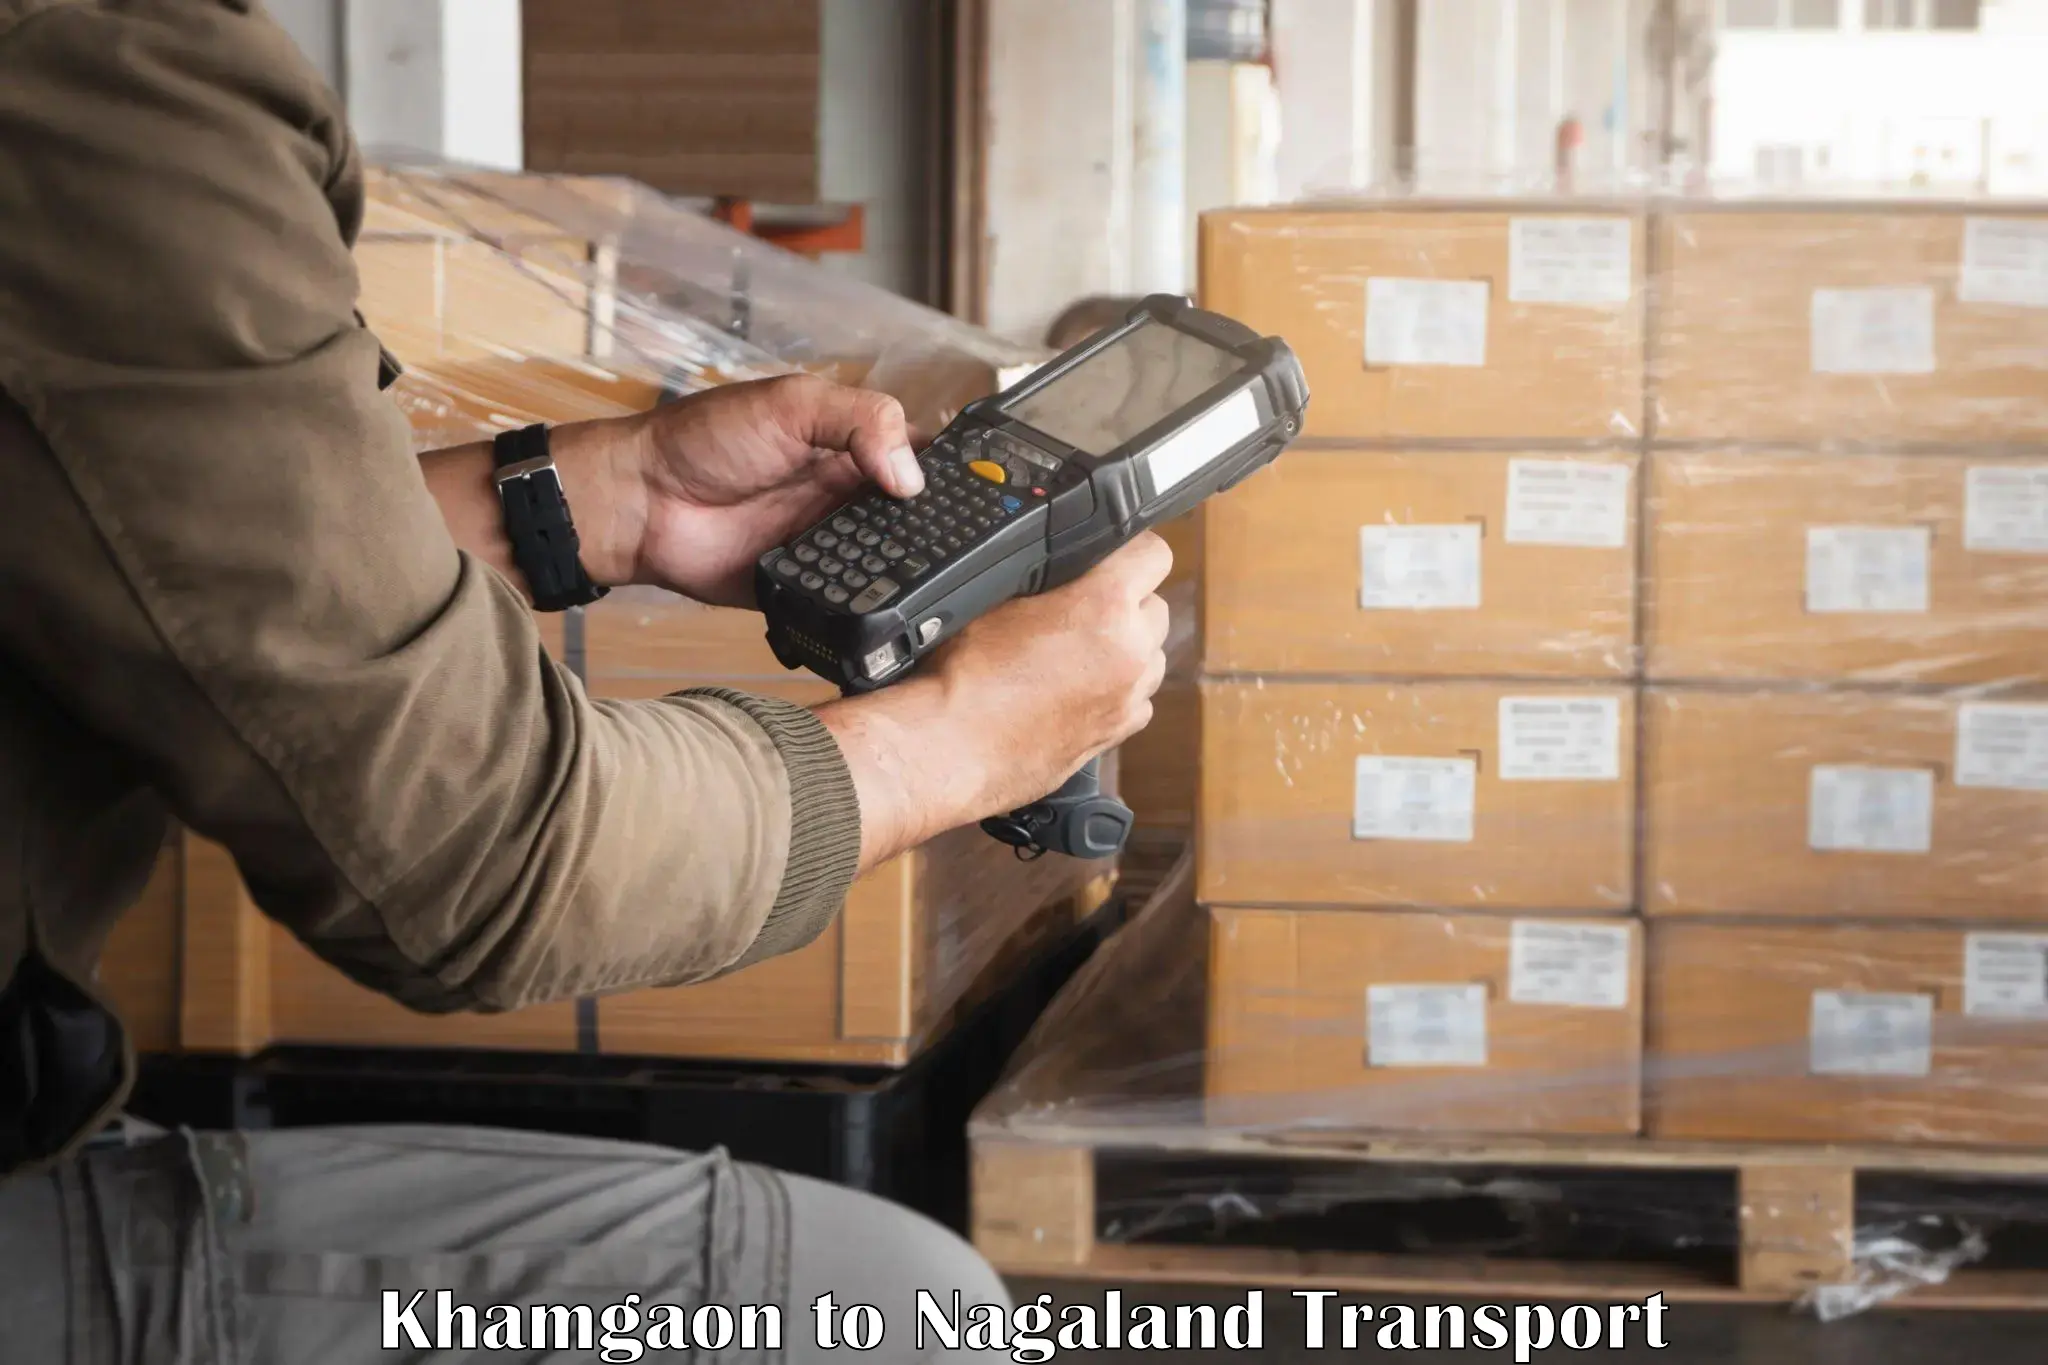 Parcel transport services Khamgaon to NIT Nagaland